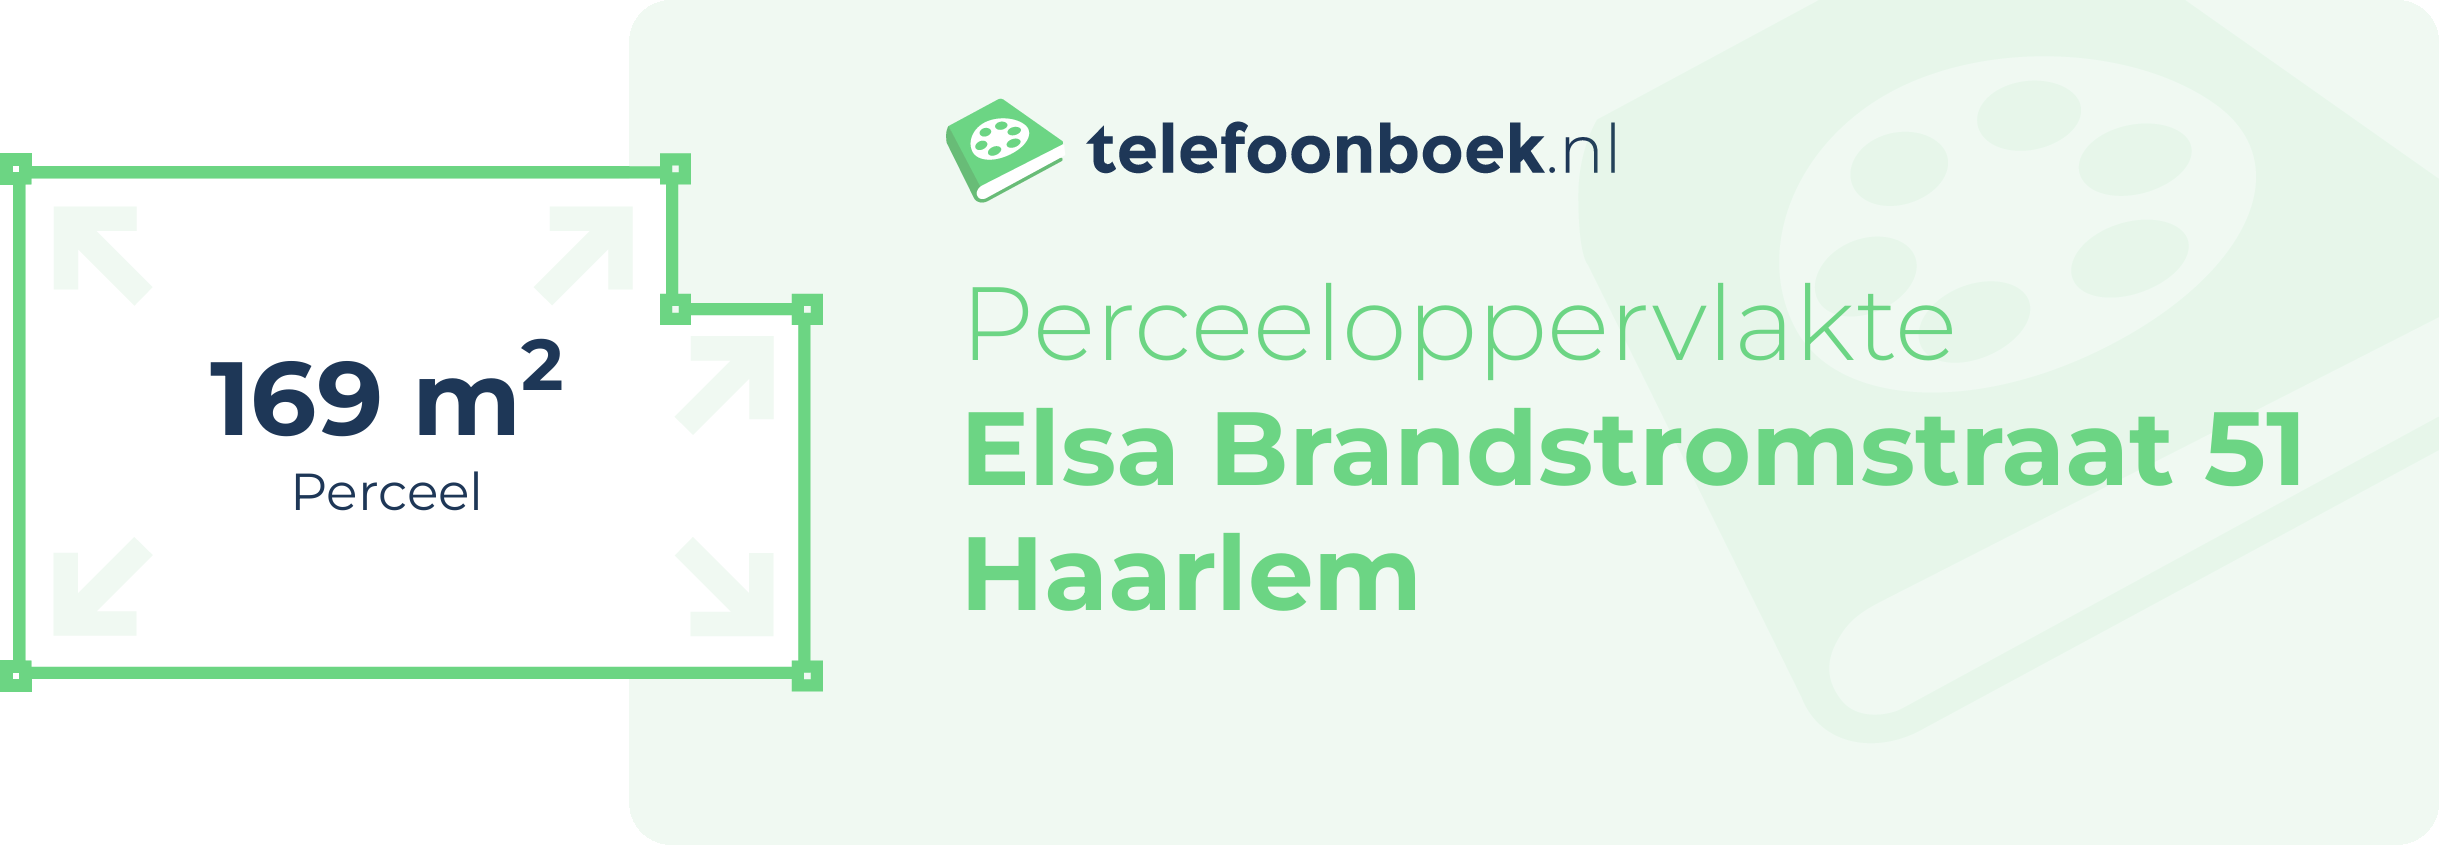 Perceeloppervlakte Elsa Brandstromstraat 51 Haarlem